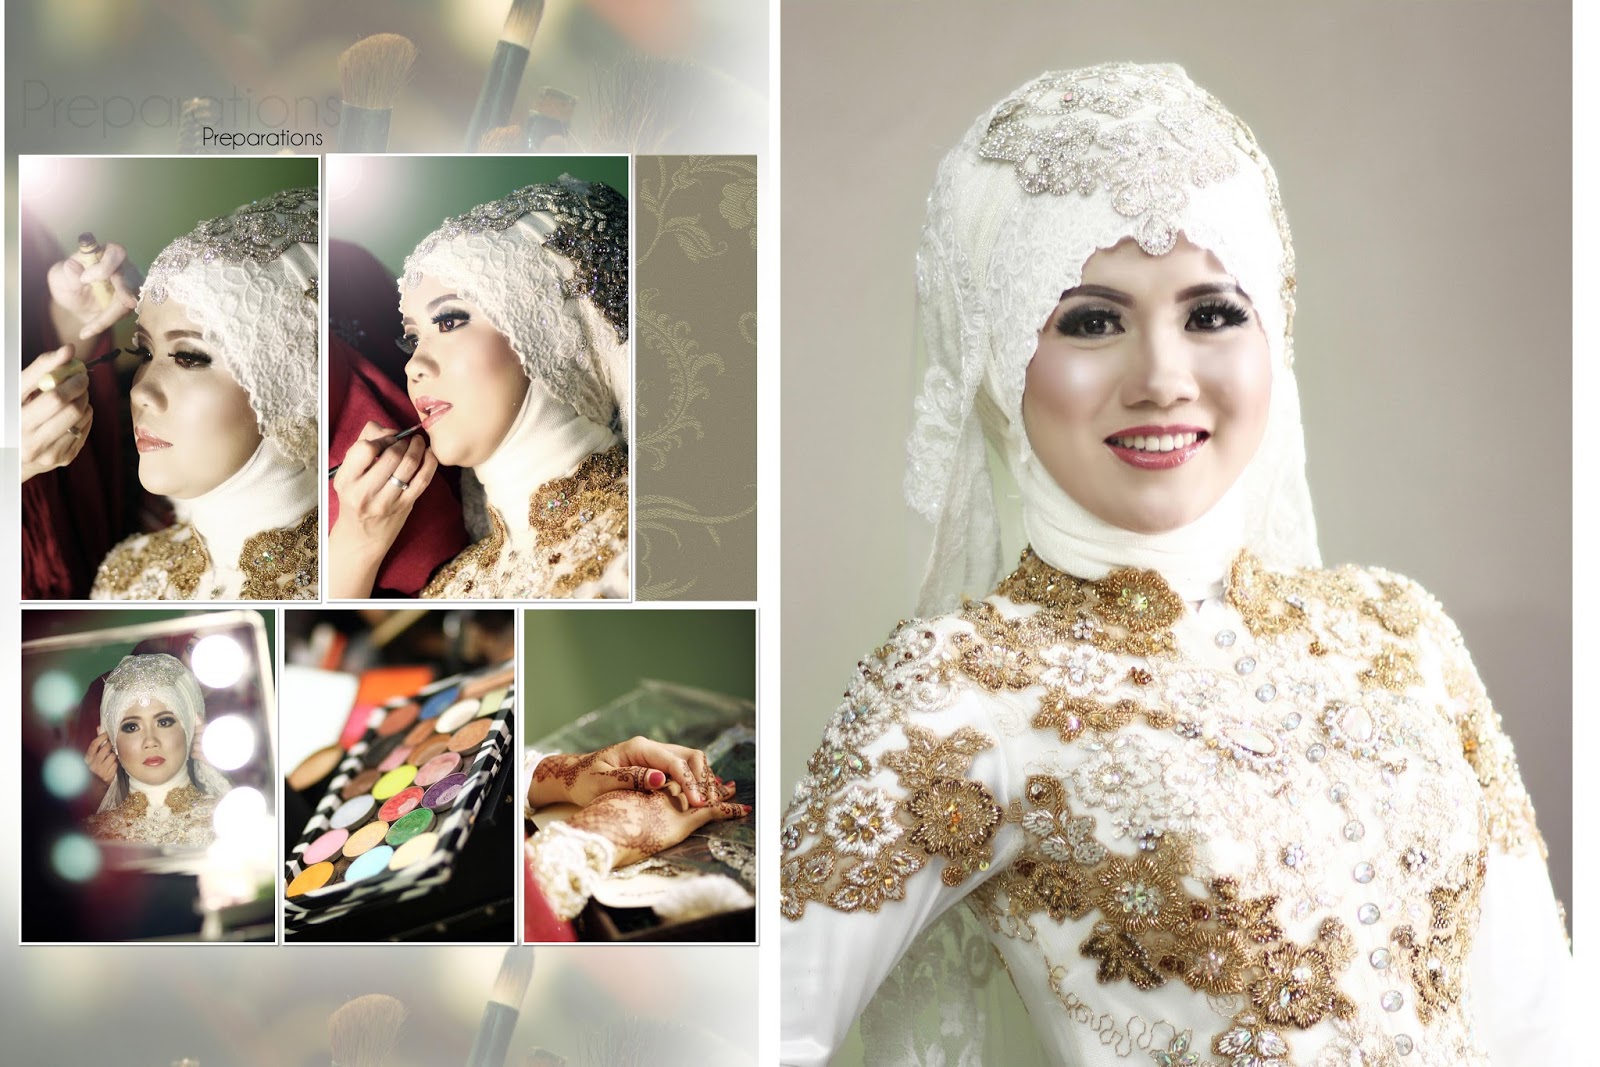 FOTO DOKUMENTASI WEDDING JAKARTA PREWEDDING MURAH BEKASI PONDOK GEDE